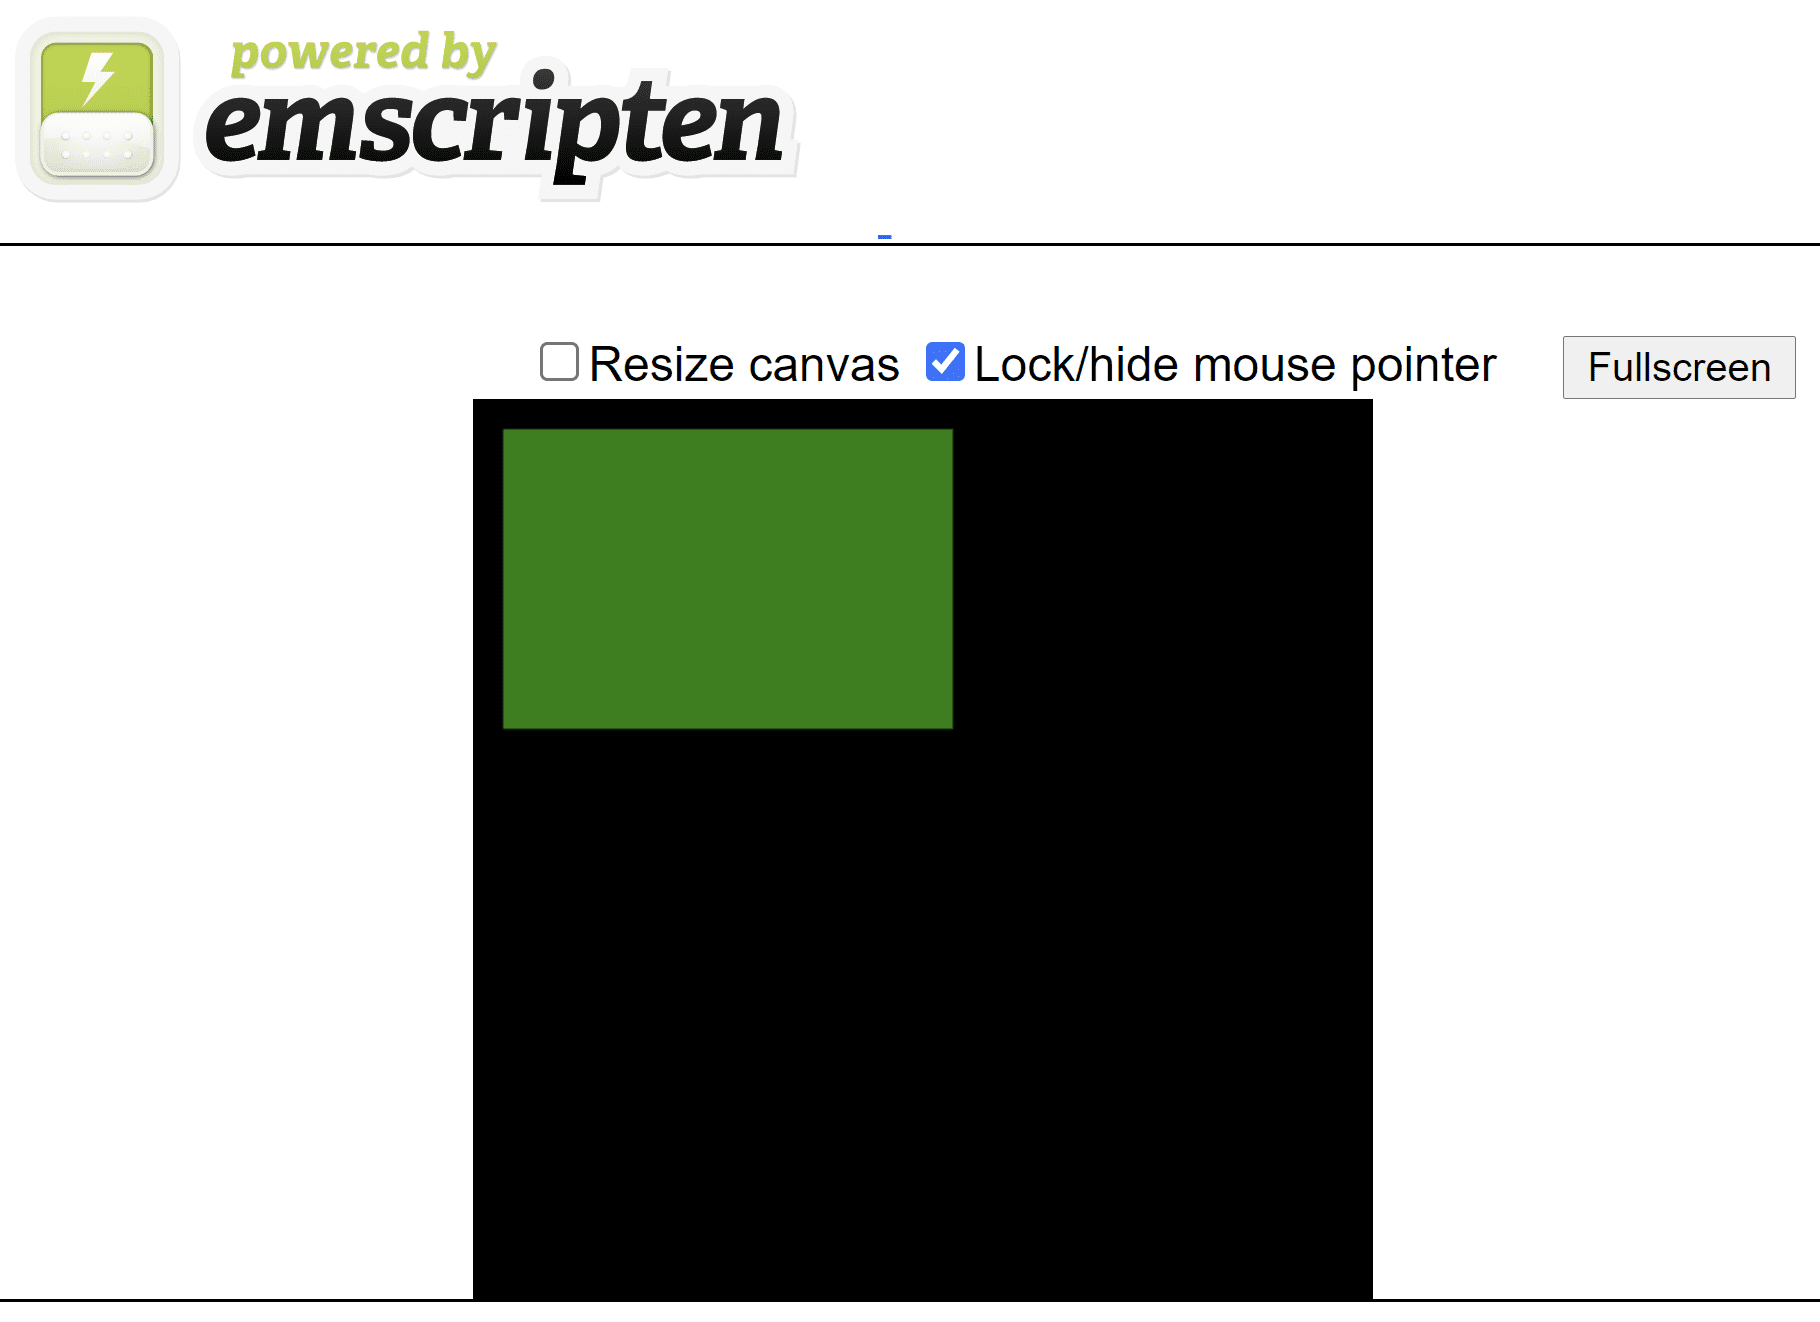 由插圖產生的 HTML 網頁，顯示黑色方形畫布上的綠色矩形。